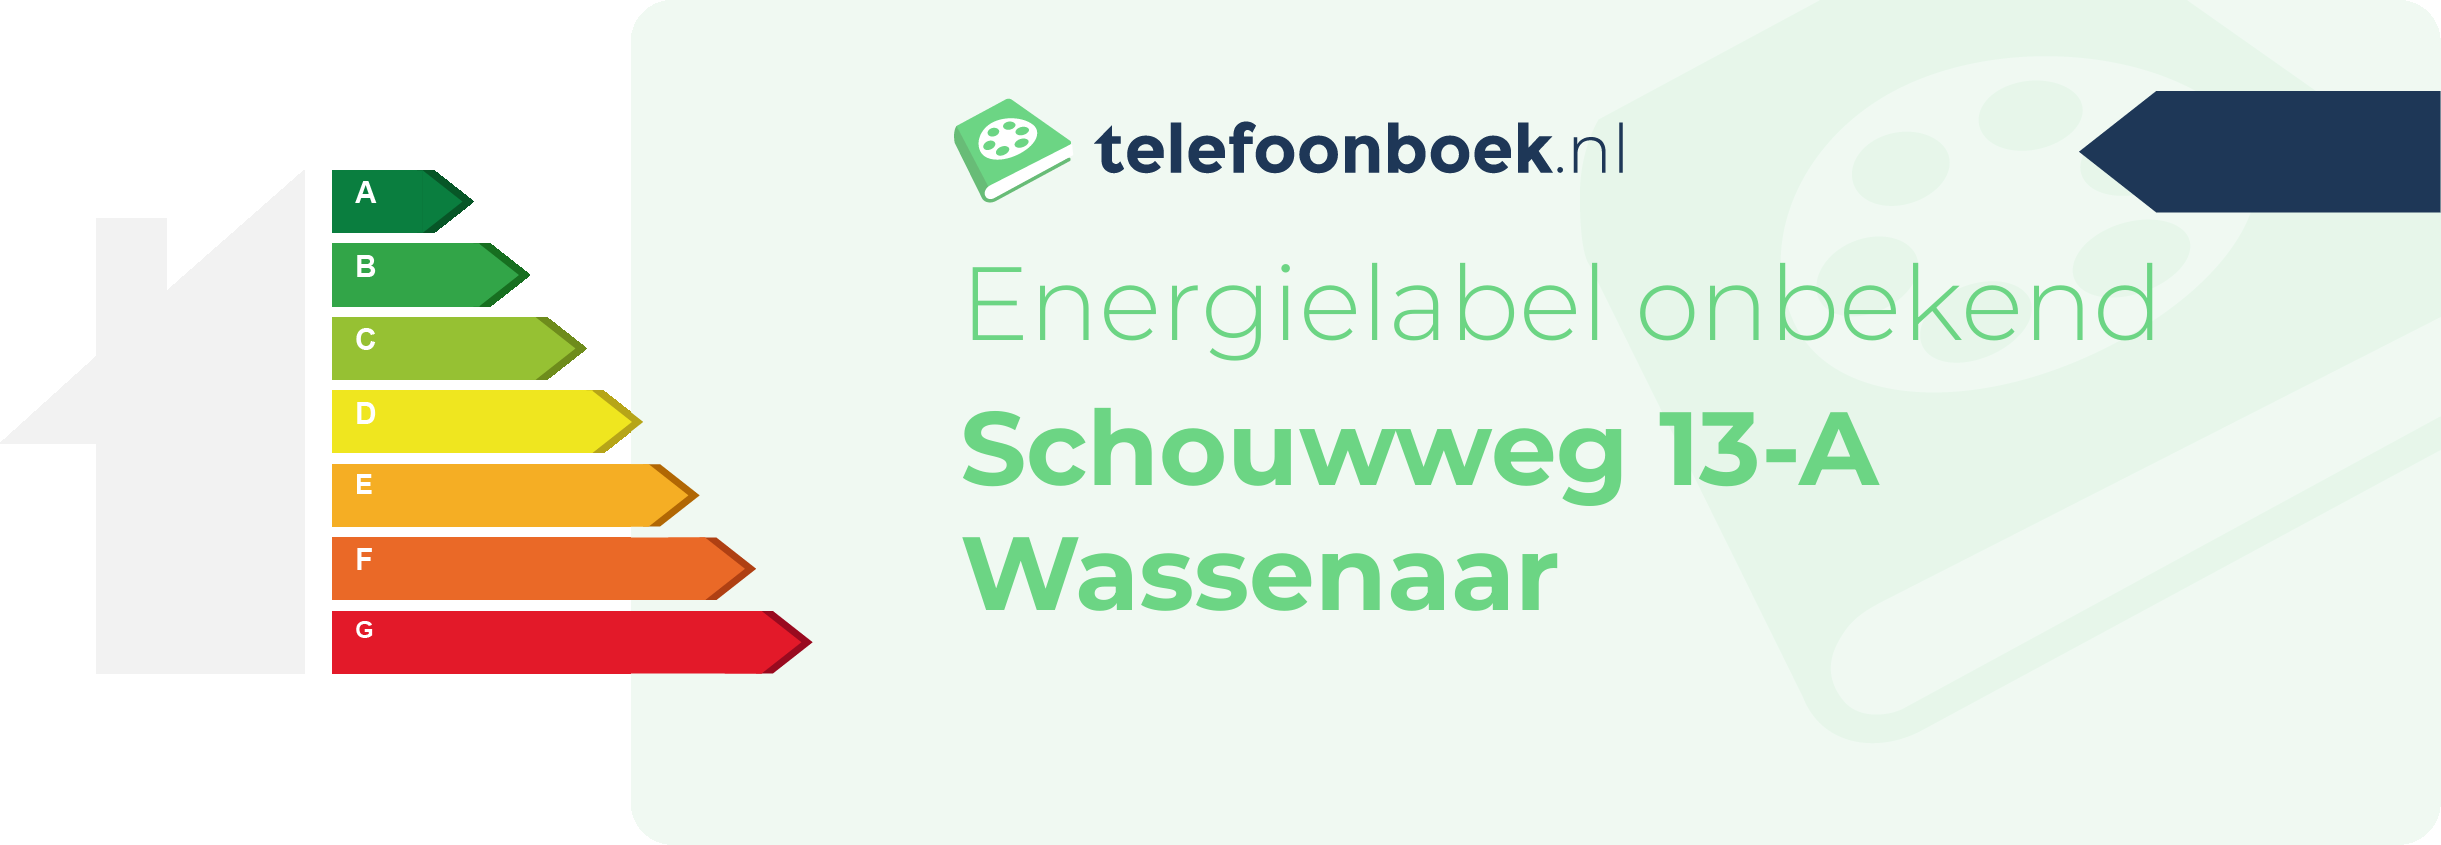 Energielabel Schouwweg 13-A Wassenaar